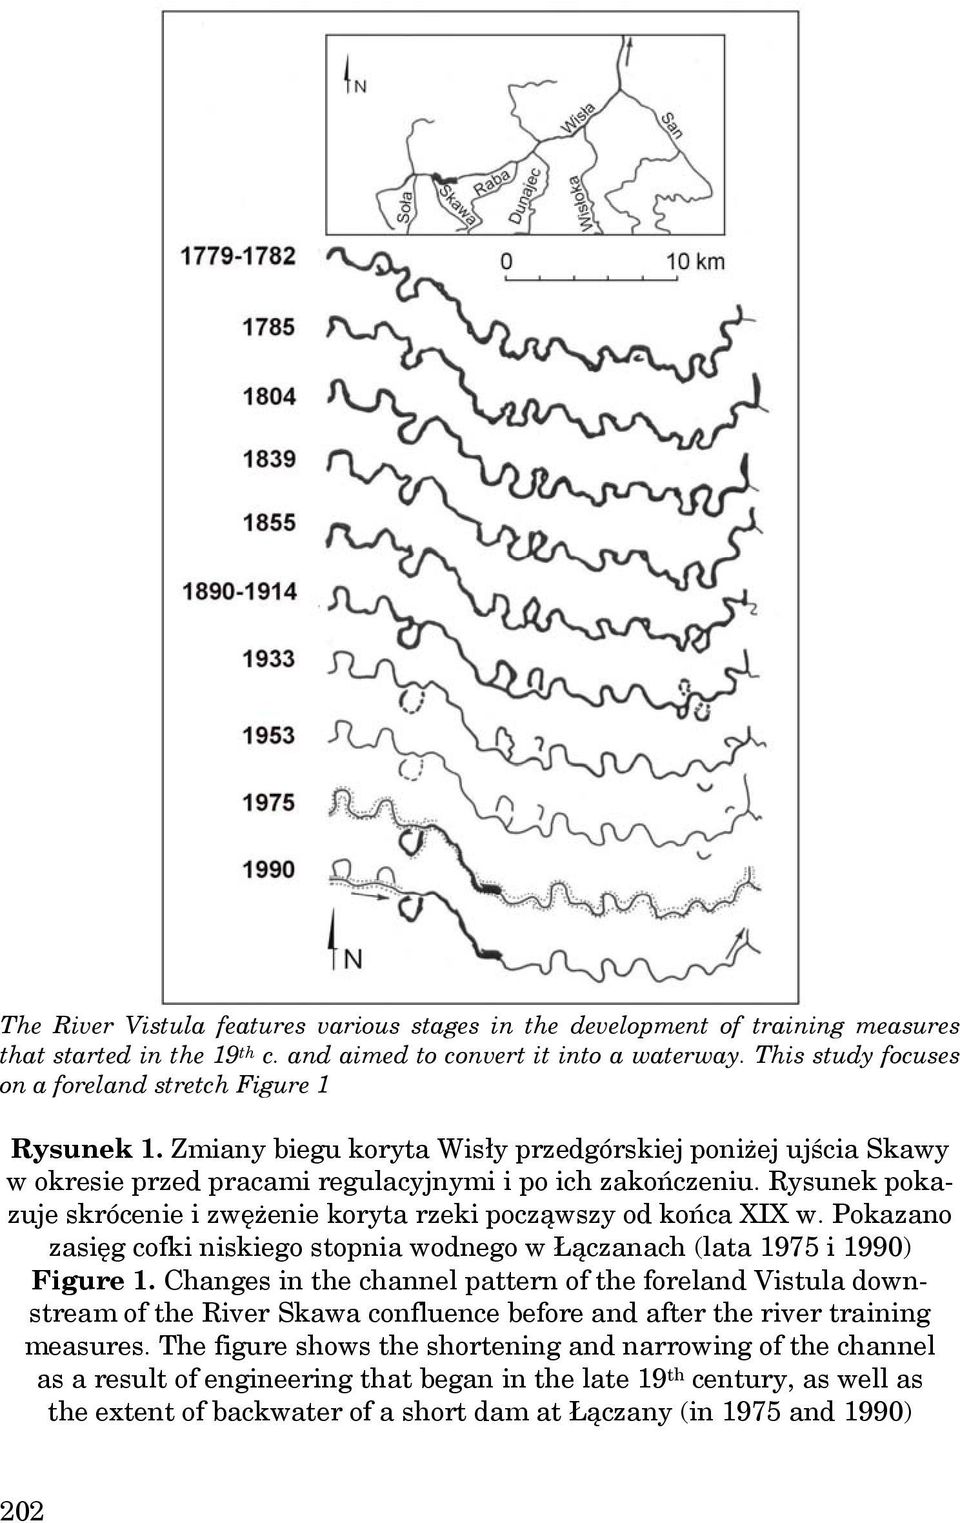 Rysunek pokazuje skrócenie i zwężenie koryta rzeki począwszy od końca XIX w. Pokazano zasięg cofki niskiego stopnia wodnego w Łączanach (lata 1975 i 1990) Figure 1.